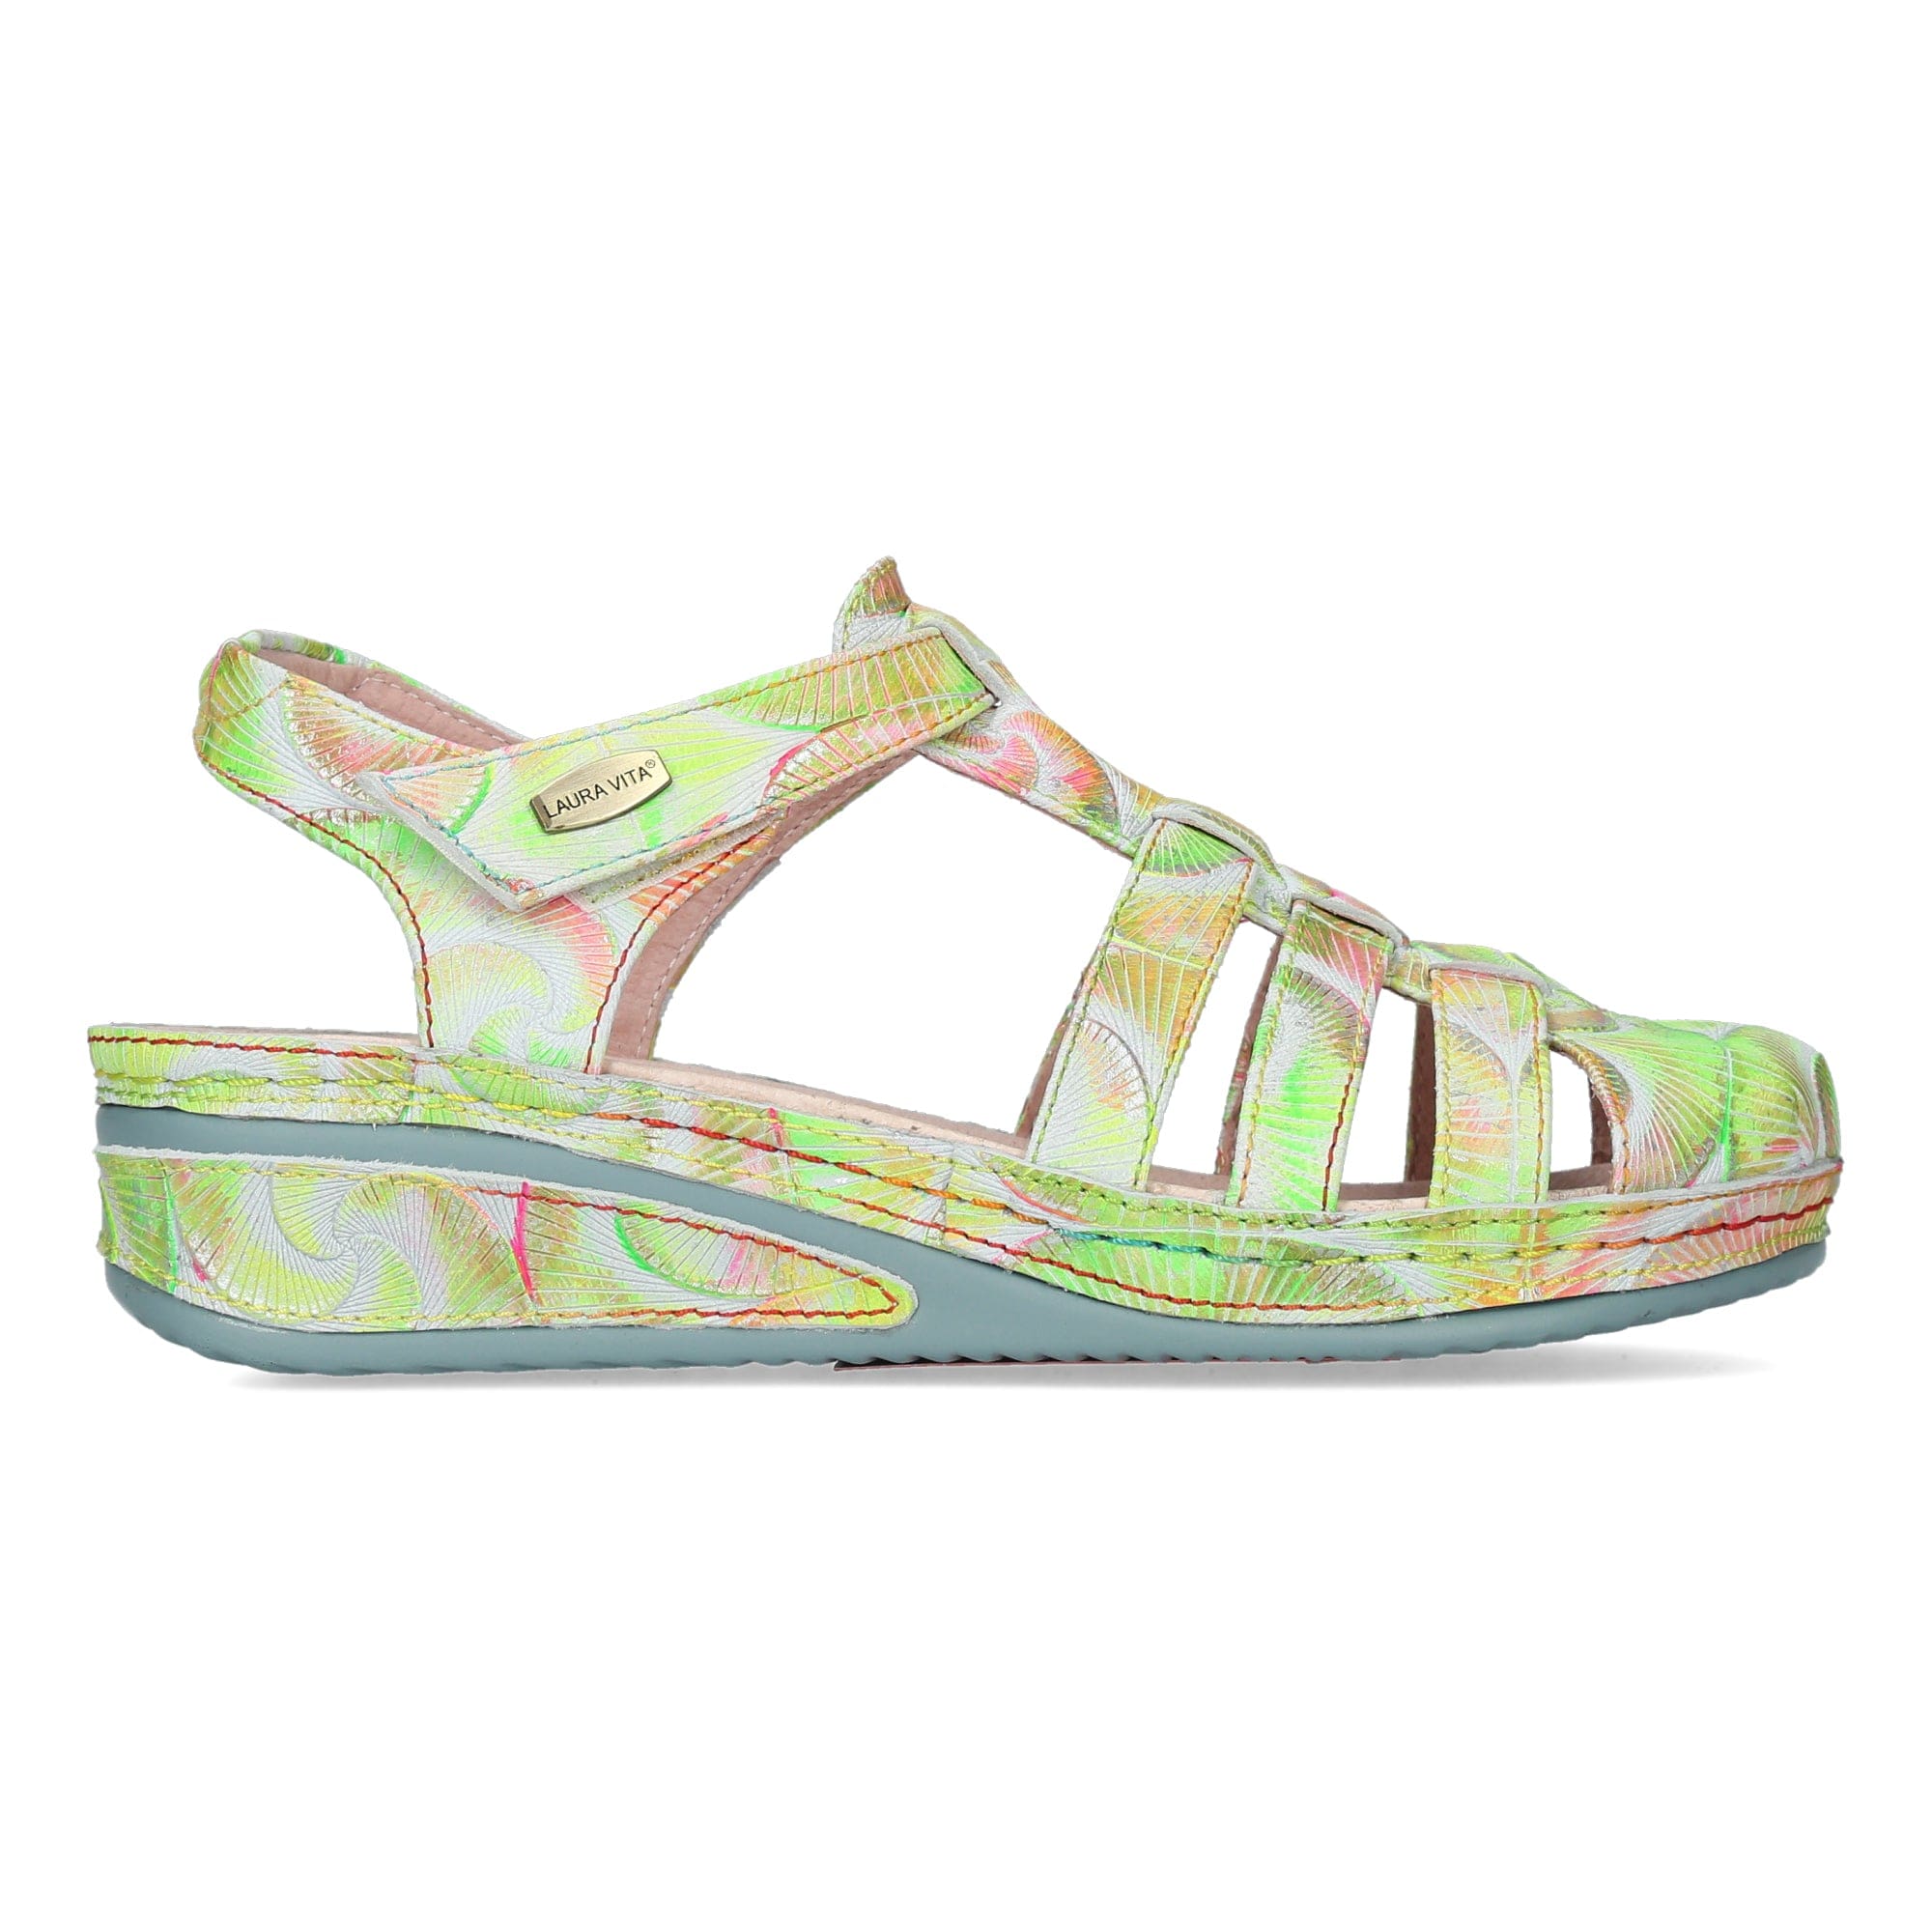 Shoes JACDISO 84 - 35 / Green - Ballerina